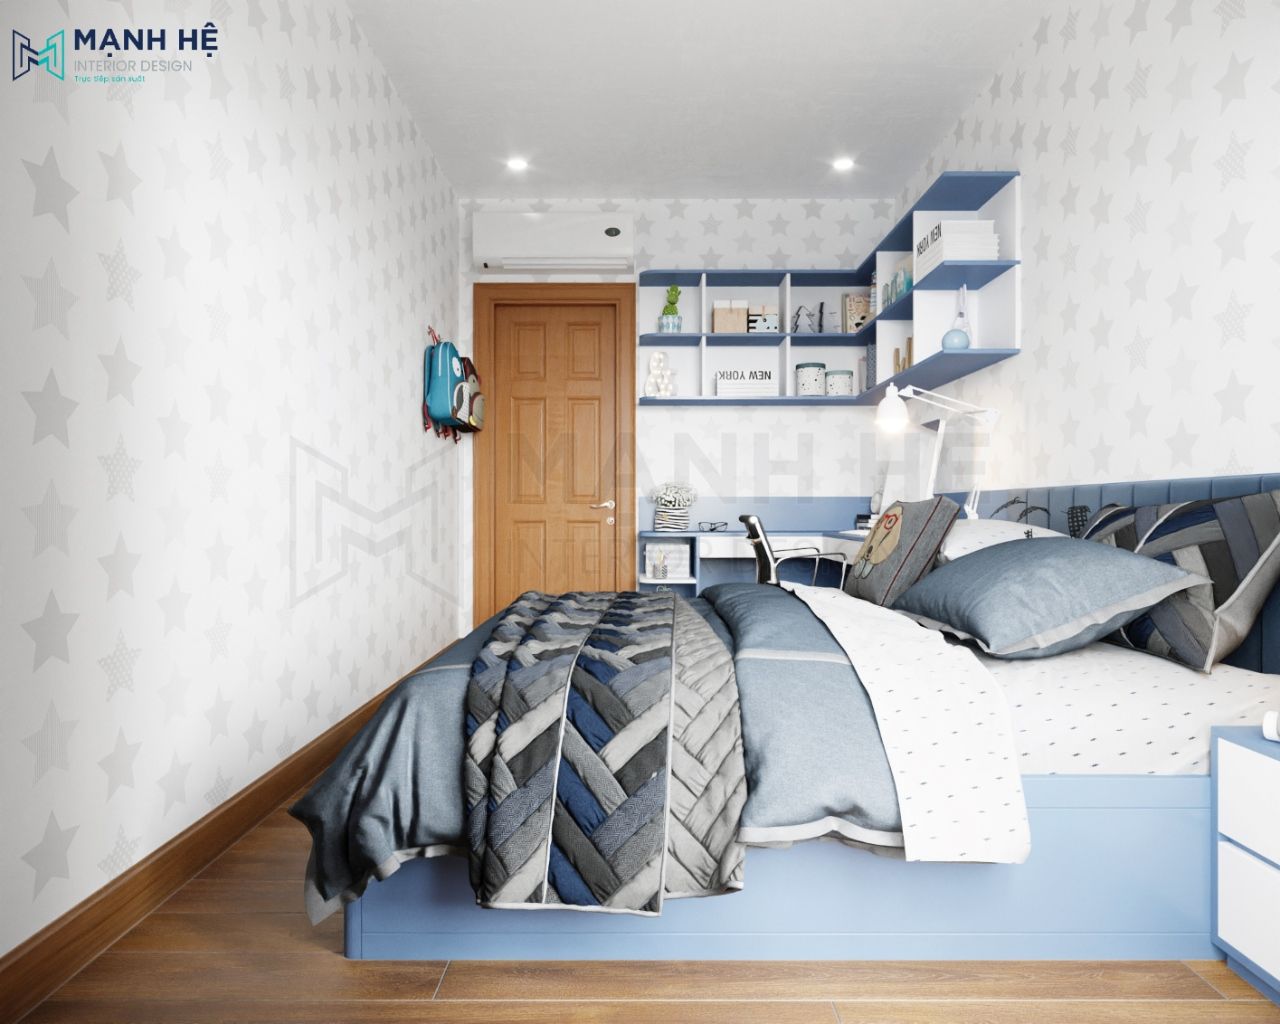 Giường ngủ gỗ công nghiệp màu xanh bền, đẹp